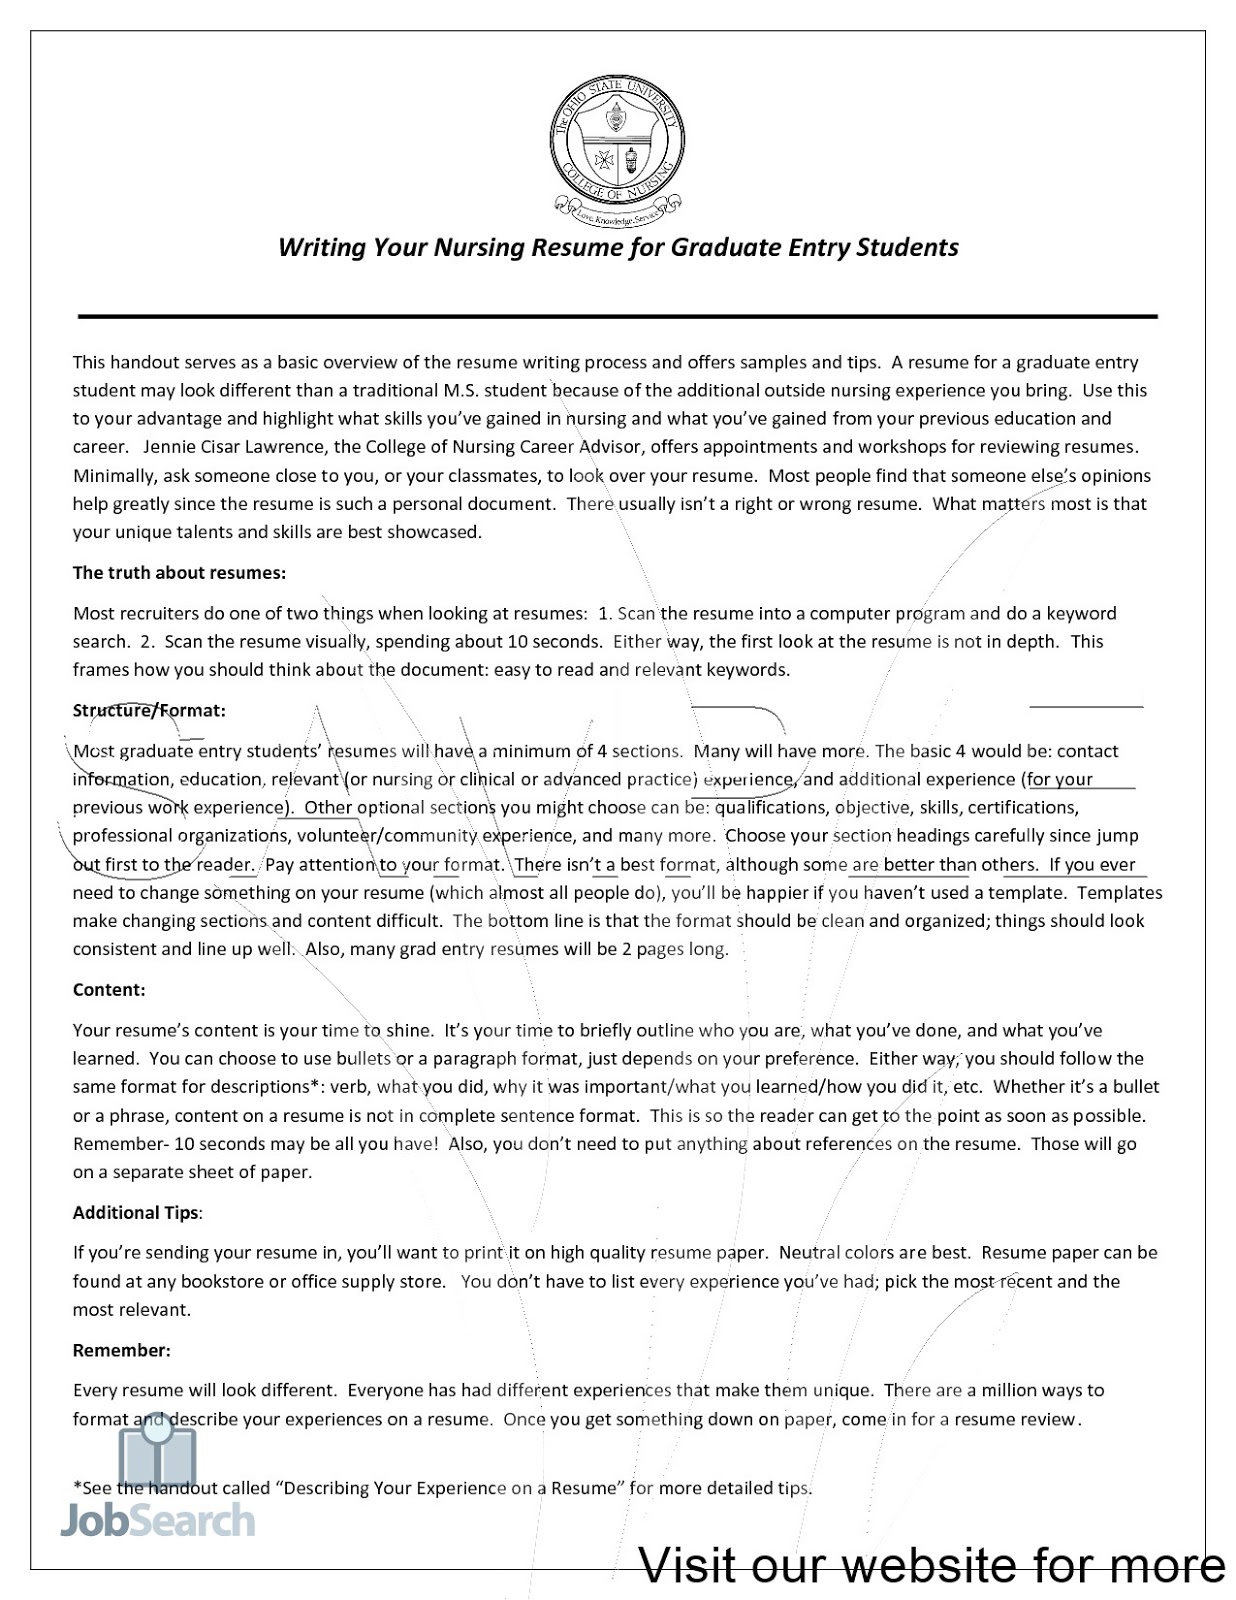 nurse resume writing service nurse resume writing services nurse resume writing service reviews rn resume writing service nurse practitioner